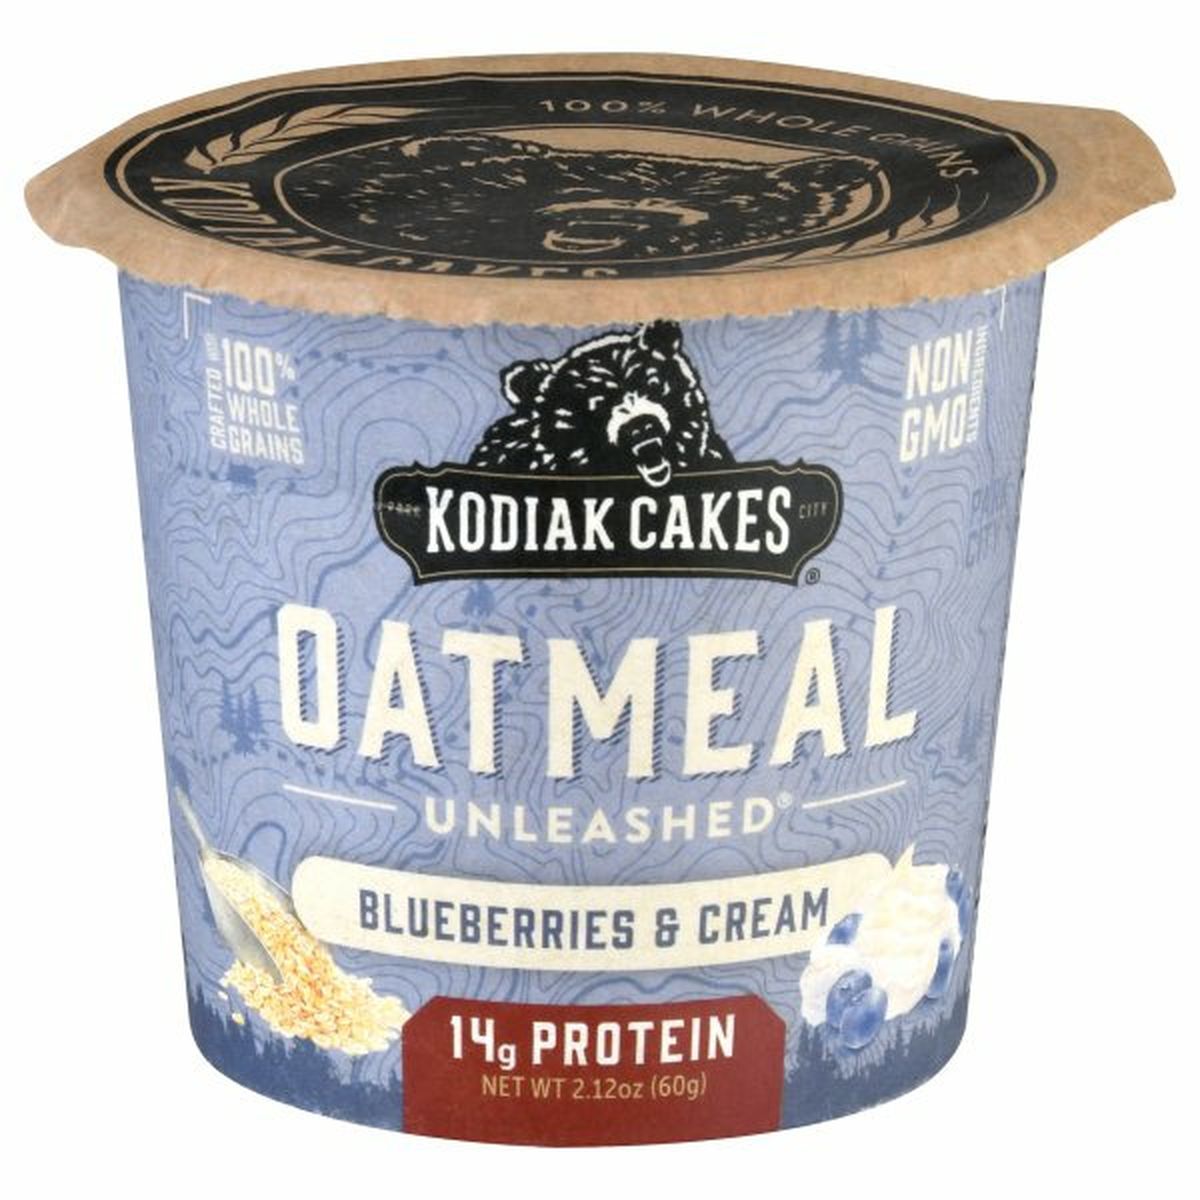 Calories in Kodiak Cakes Oatmeal, Blueberries & Cream